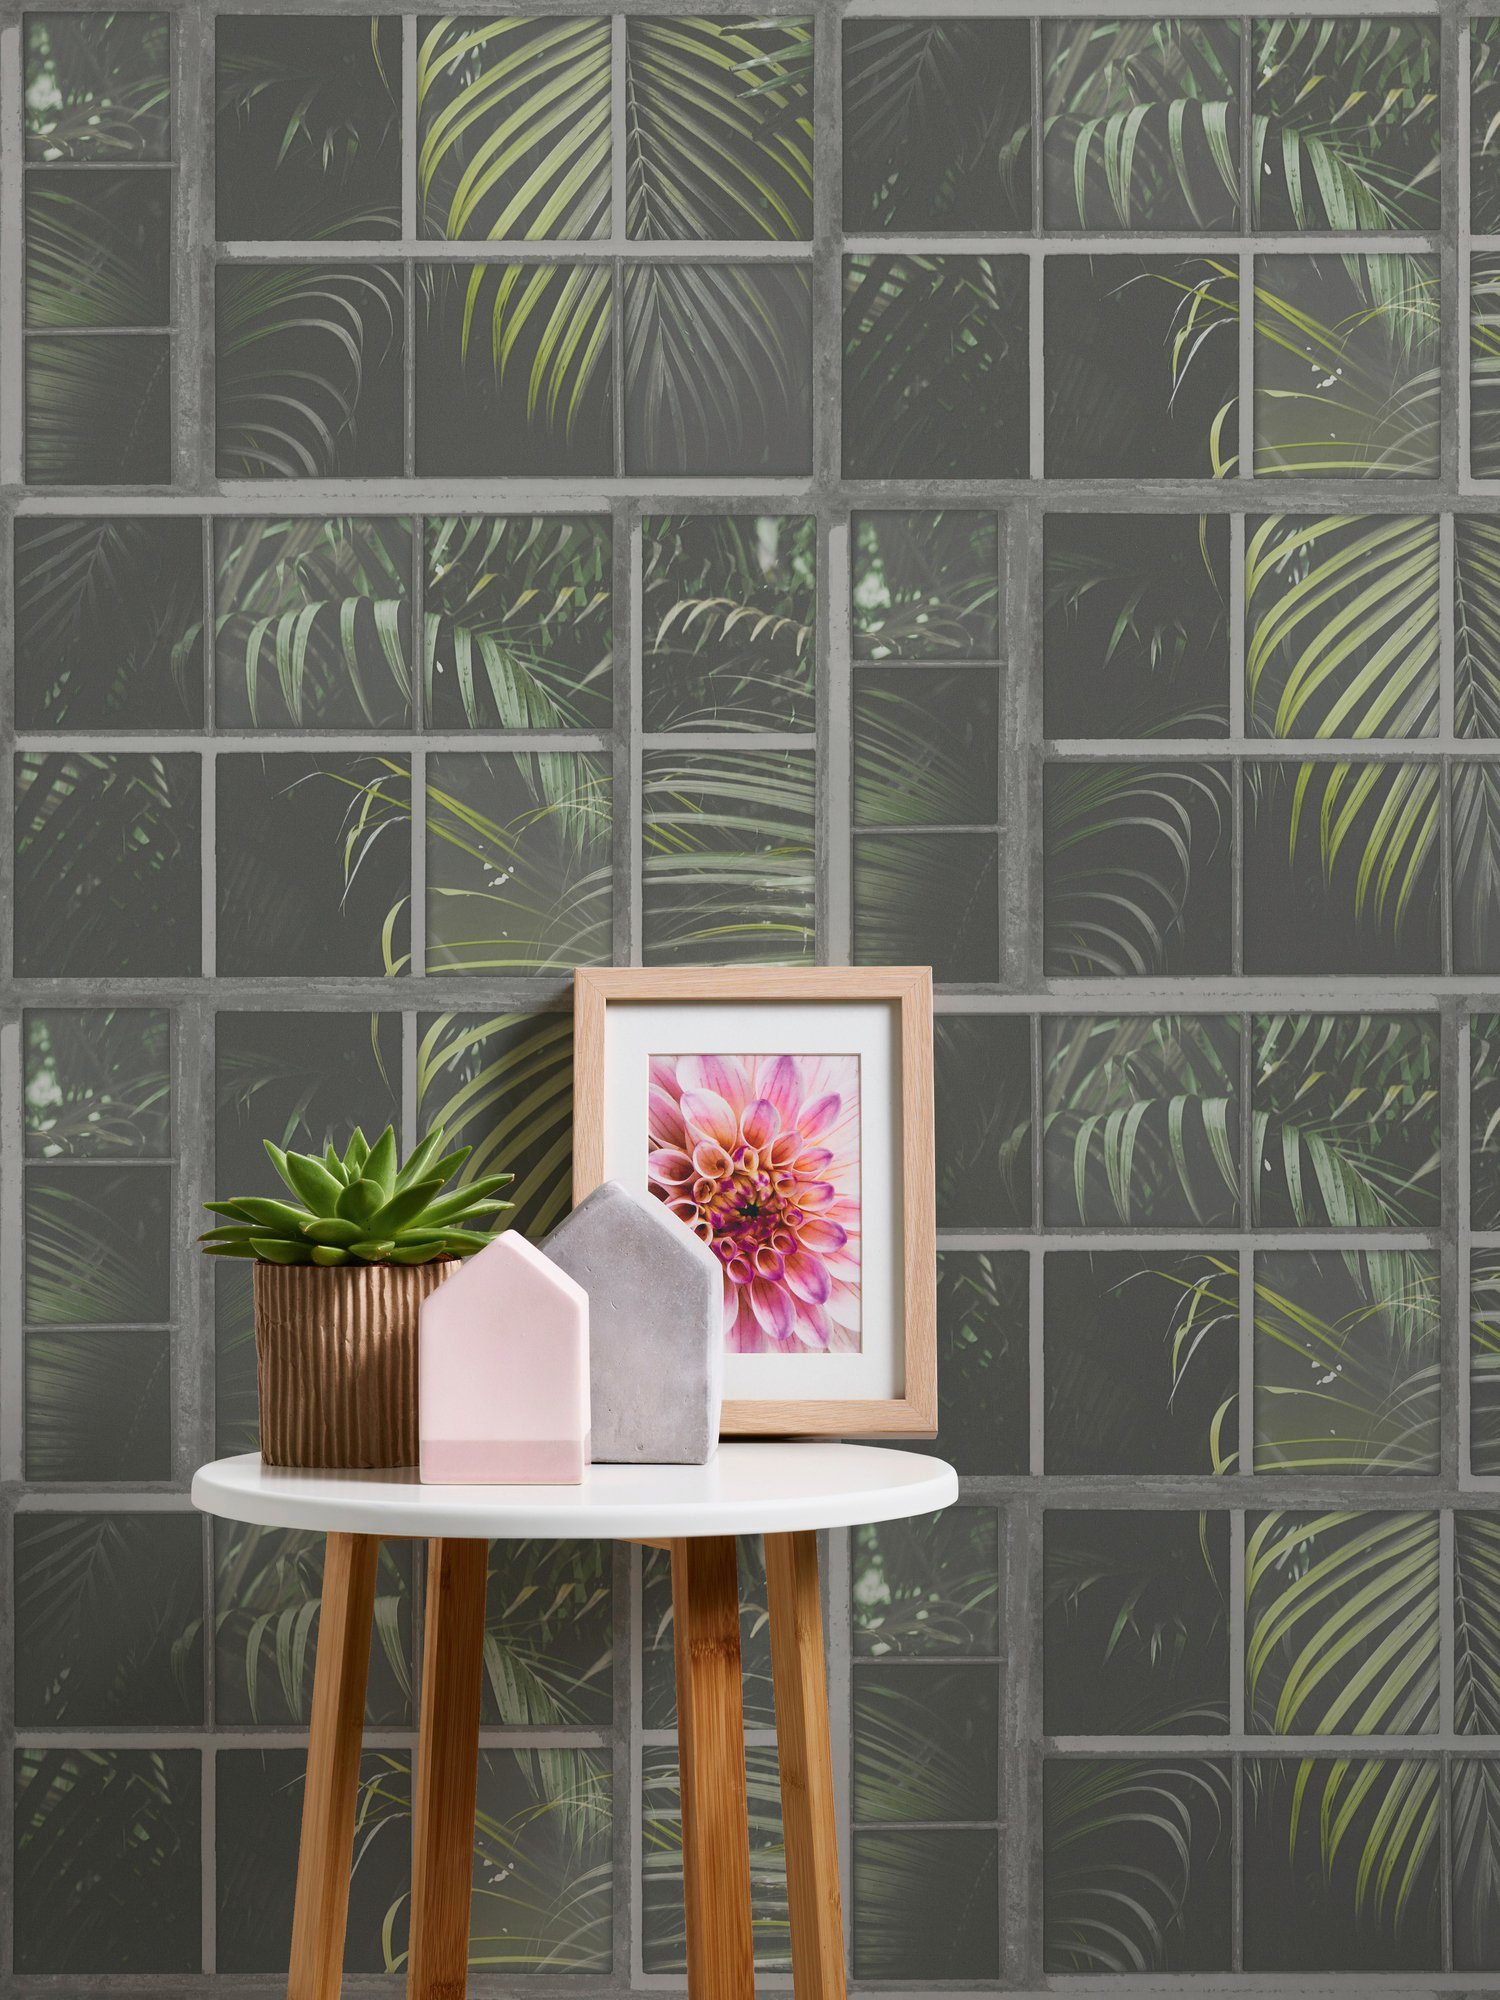 Dschungeltapete Palmen living grün/schwarz/graugrün floral, walls Industrial, Tapete botanisch, Vliestapete